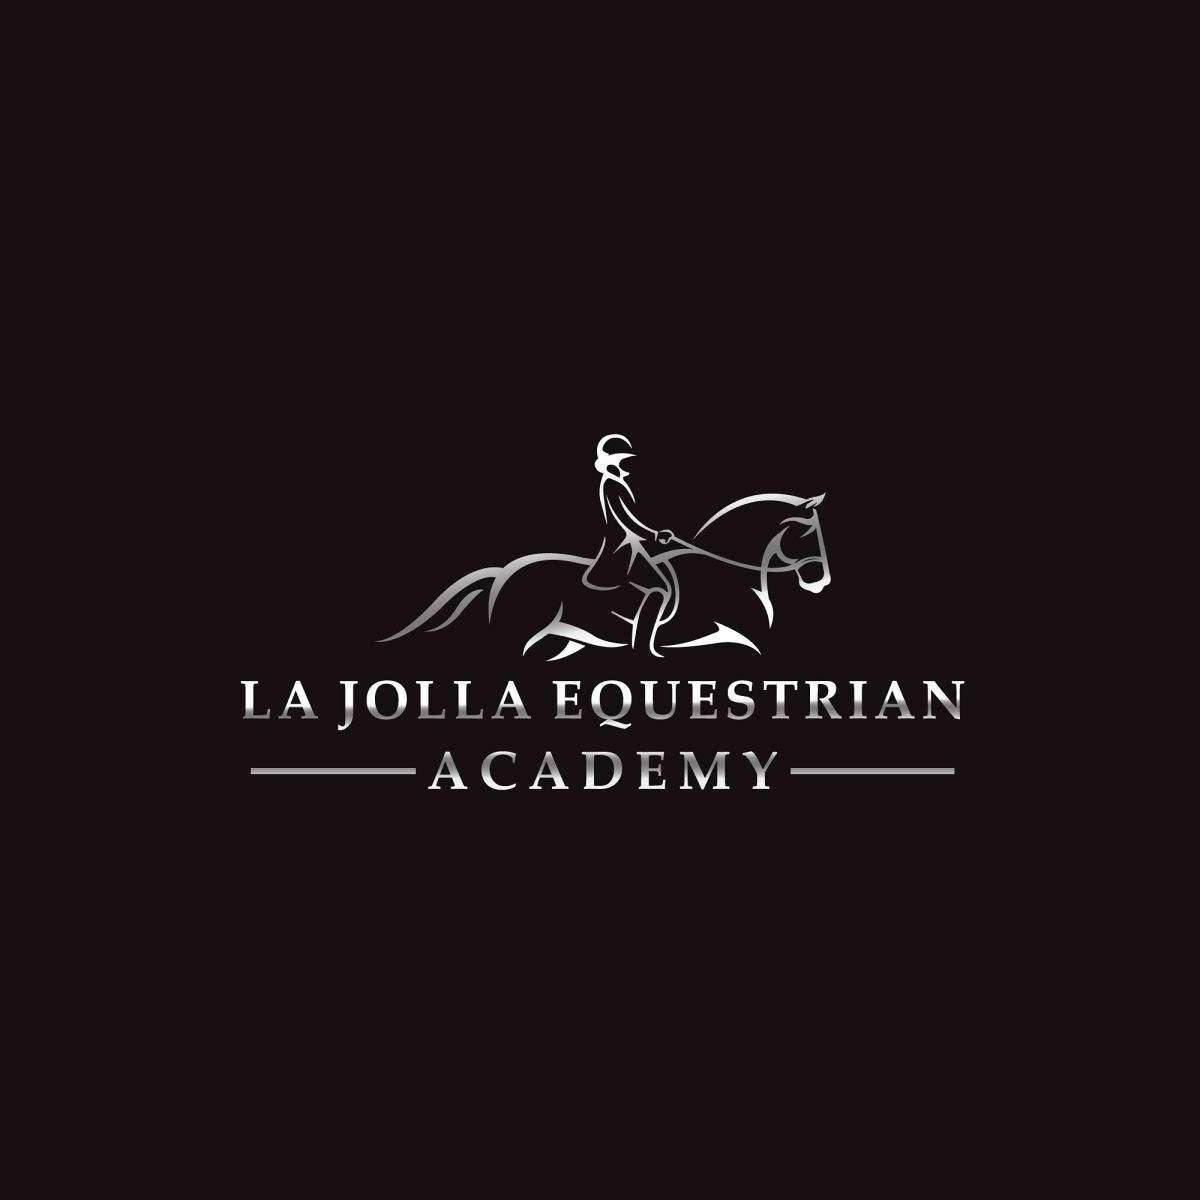 La Jolla Equestrian Academy